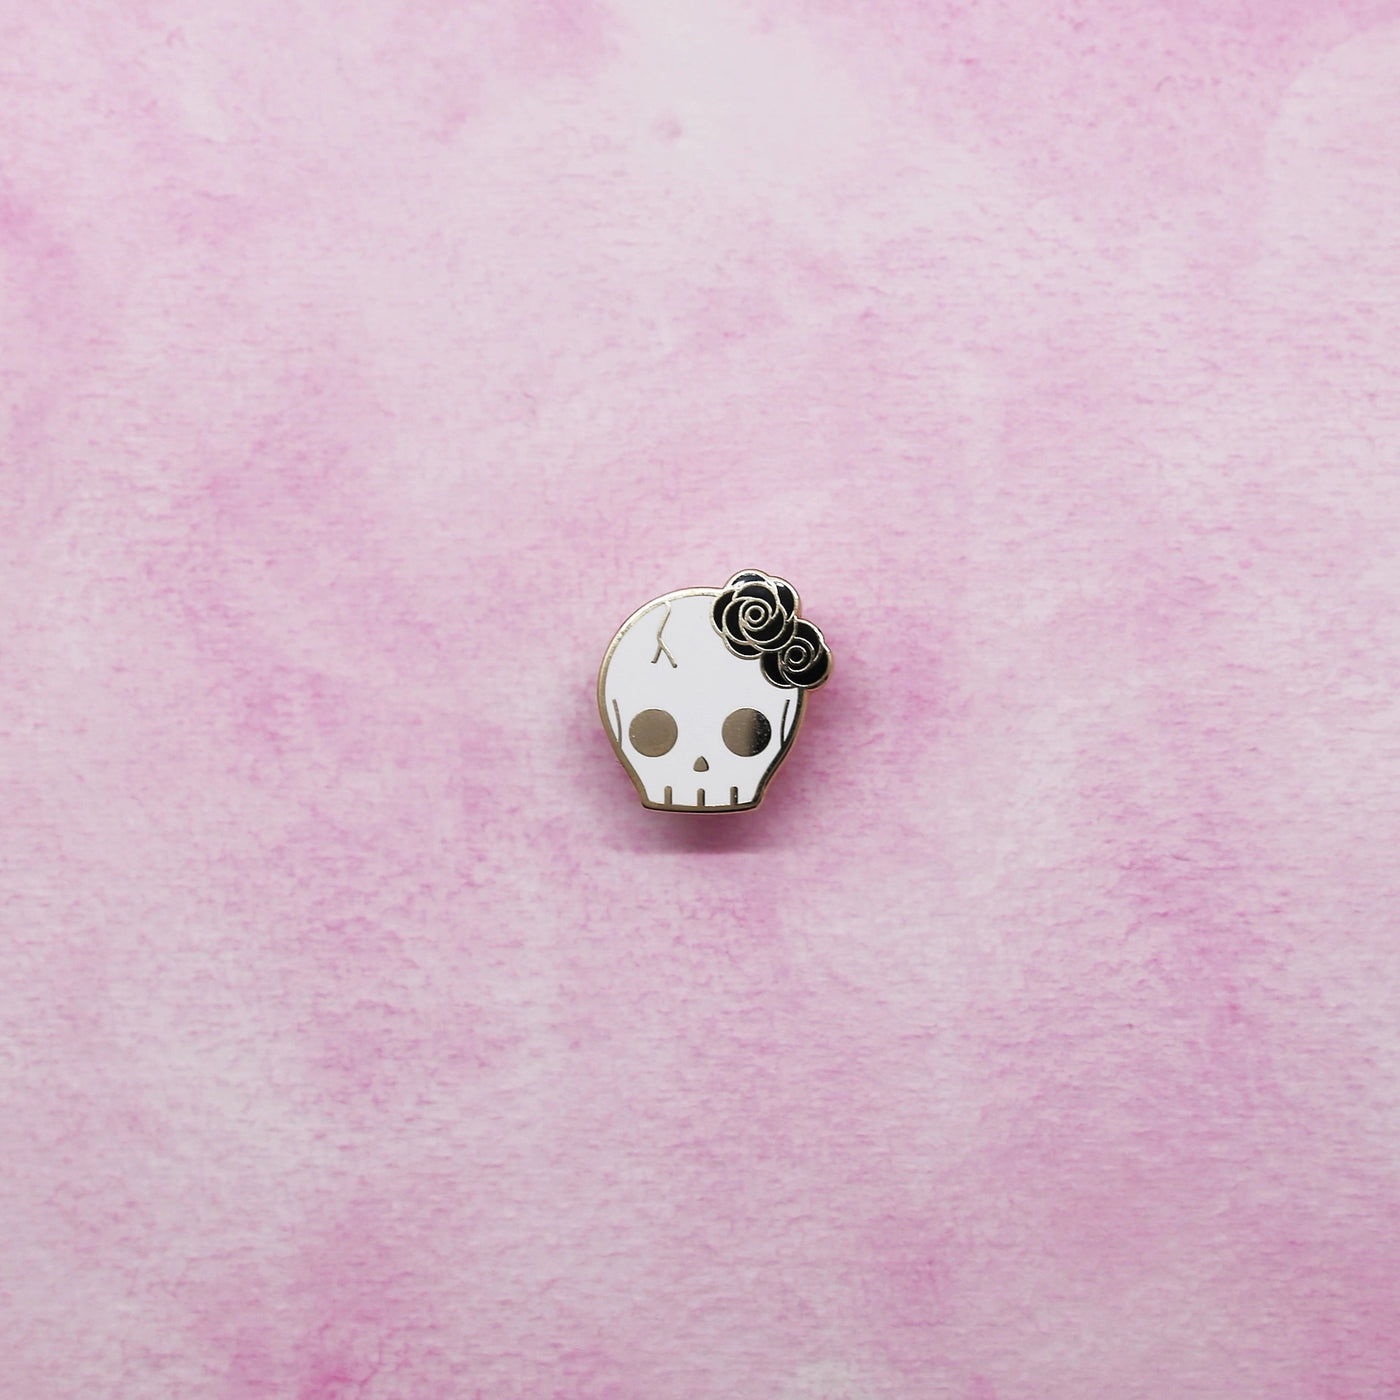 Black Flower Skull Pin